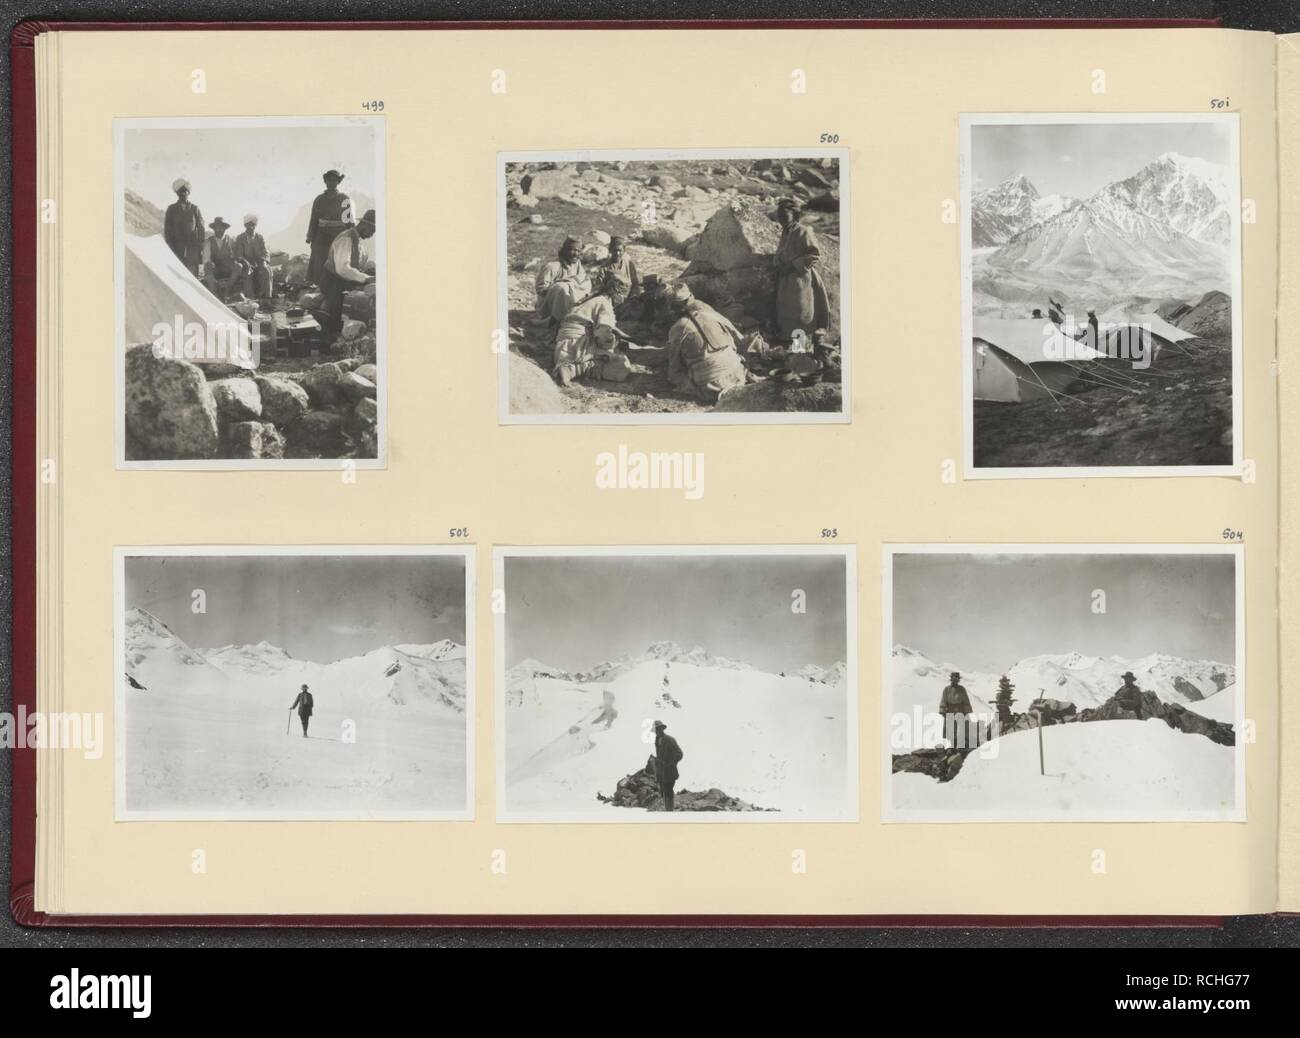 Albumblad met zes foto's. Linksboven de veldkeuken in het kamp in het Lashi-dal, Bestanddeelnr 24 24. Stock Photo